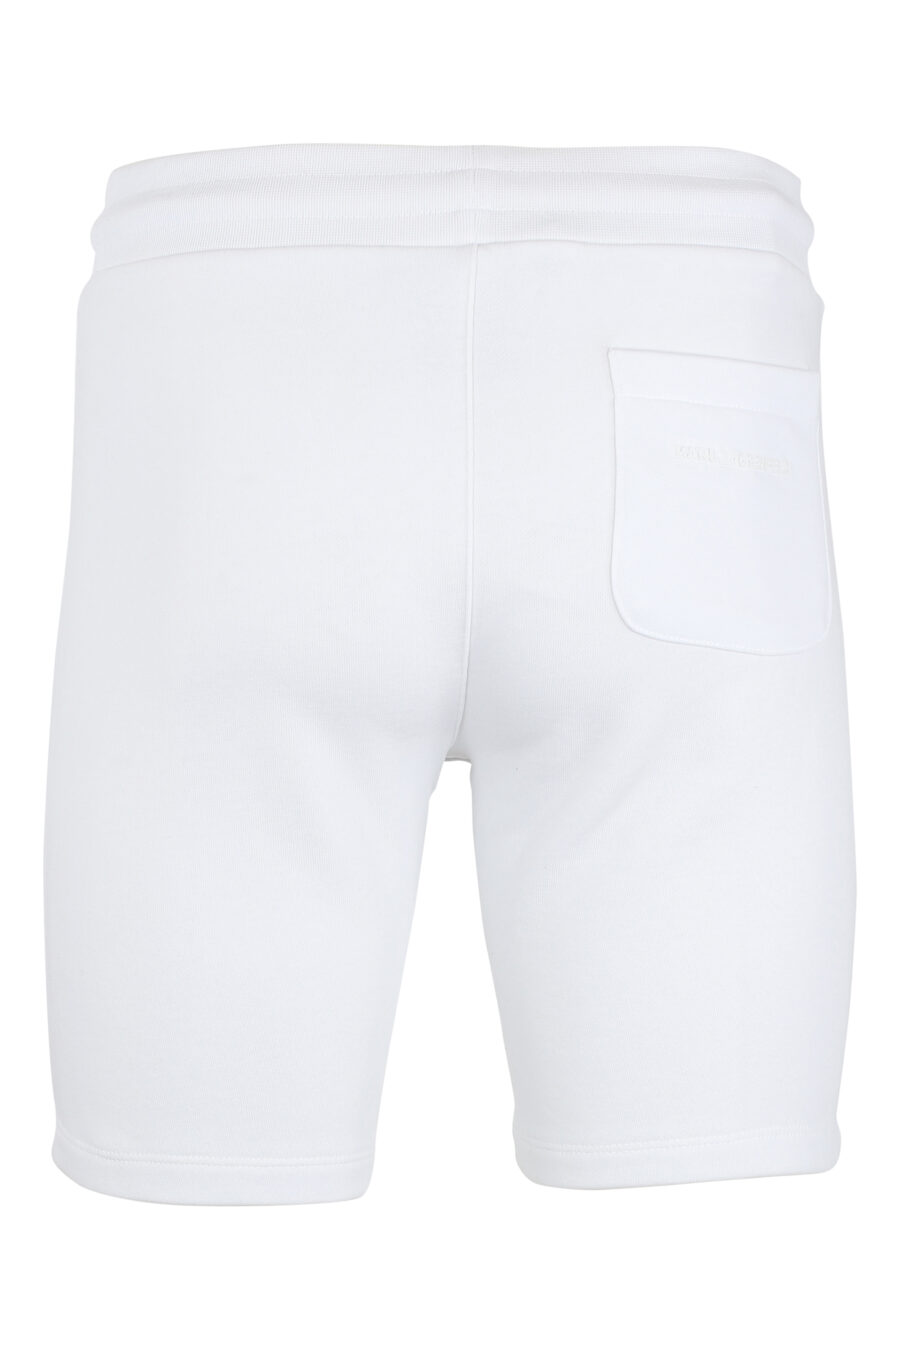 Pantalón de chándal blanco corto con minilogo "karl" en silueta negro - IMG 9516